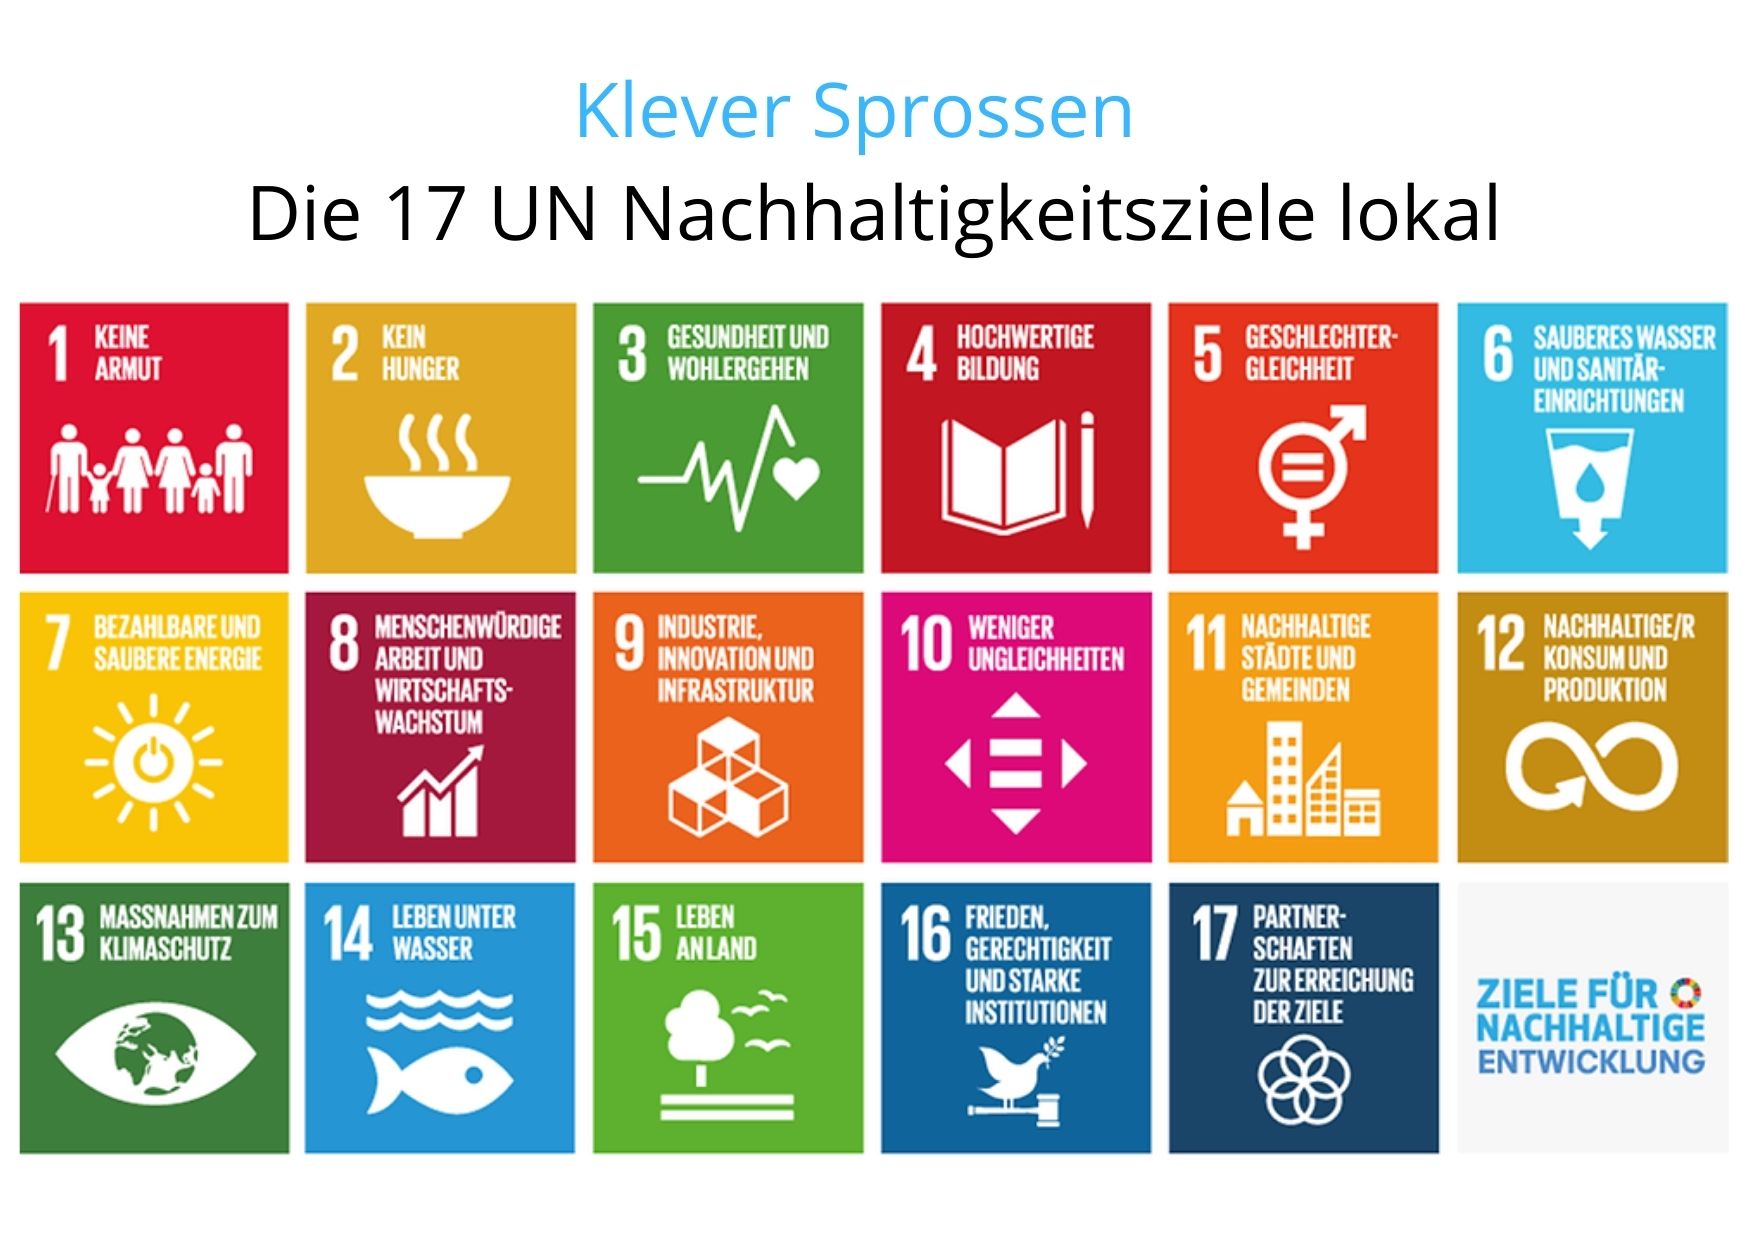 Die 17 UN Nachhaltigkeitsziele unter dem Schriftzug "Klever Sprossen"